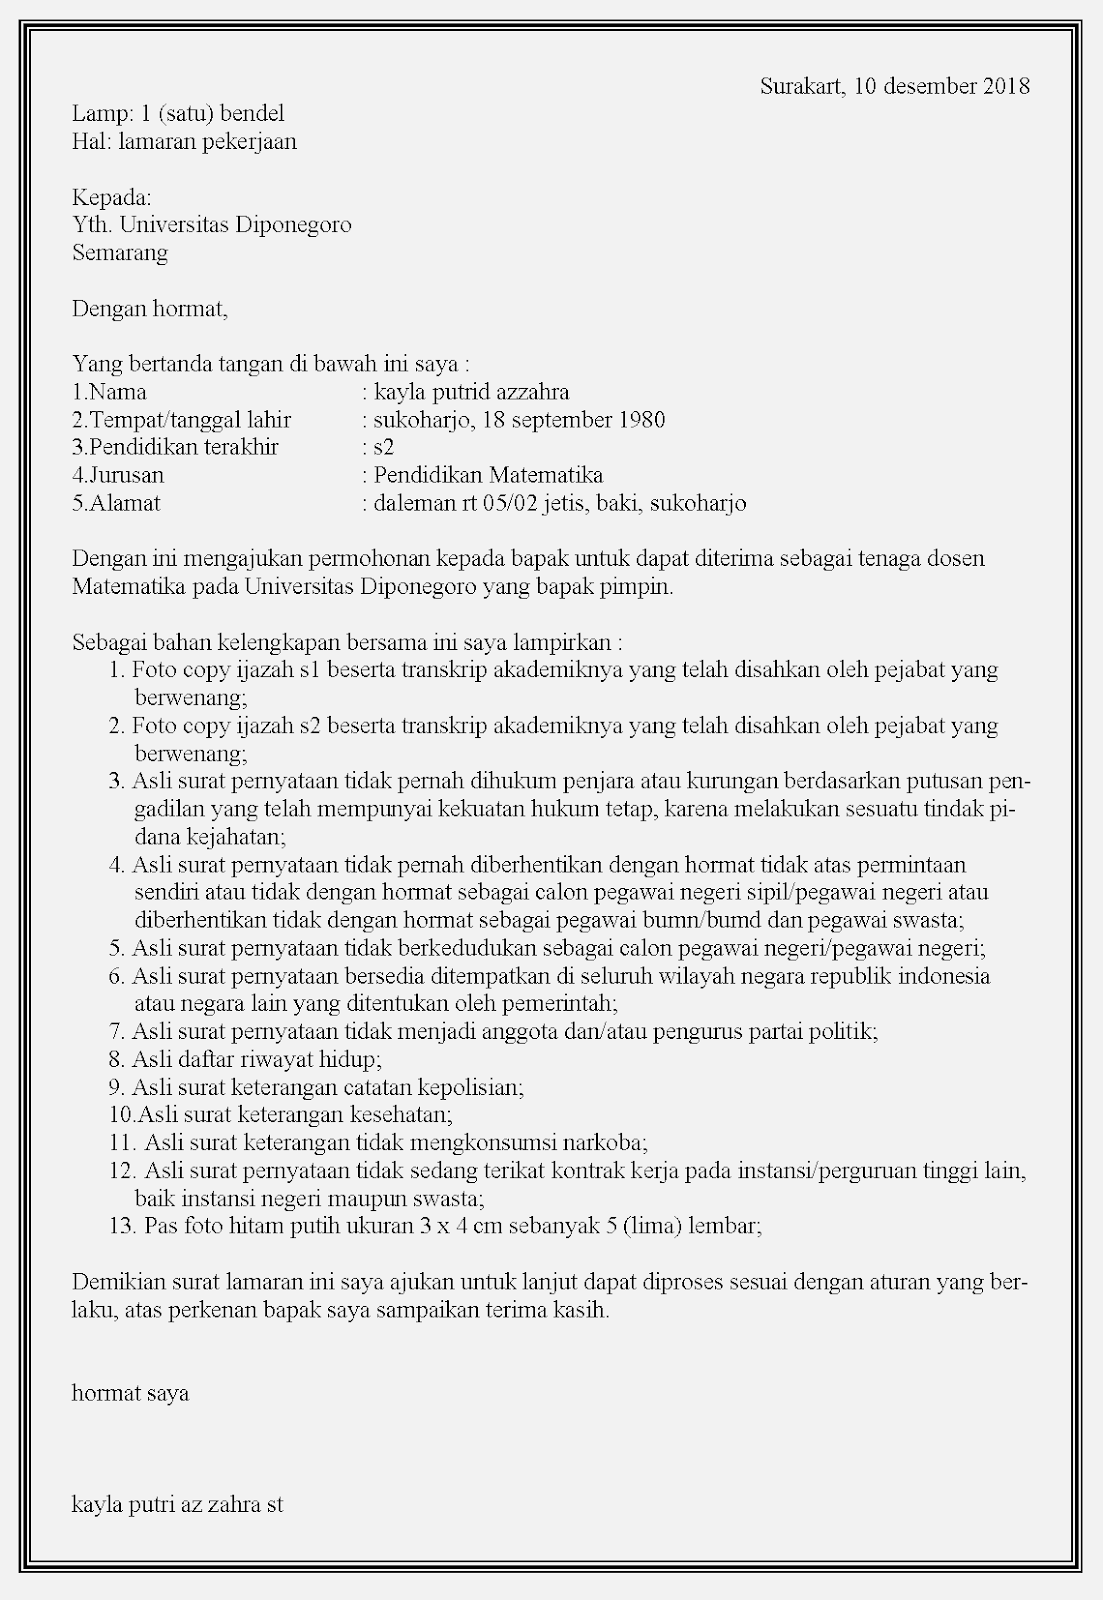 Contoh surat lamaran kerja dosen untuk melamar dosen di universitas Diponegoro